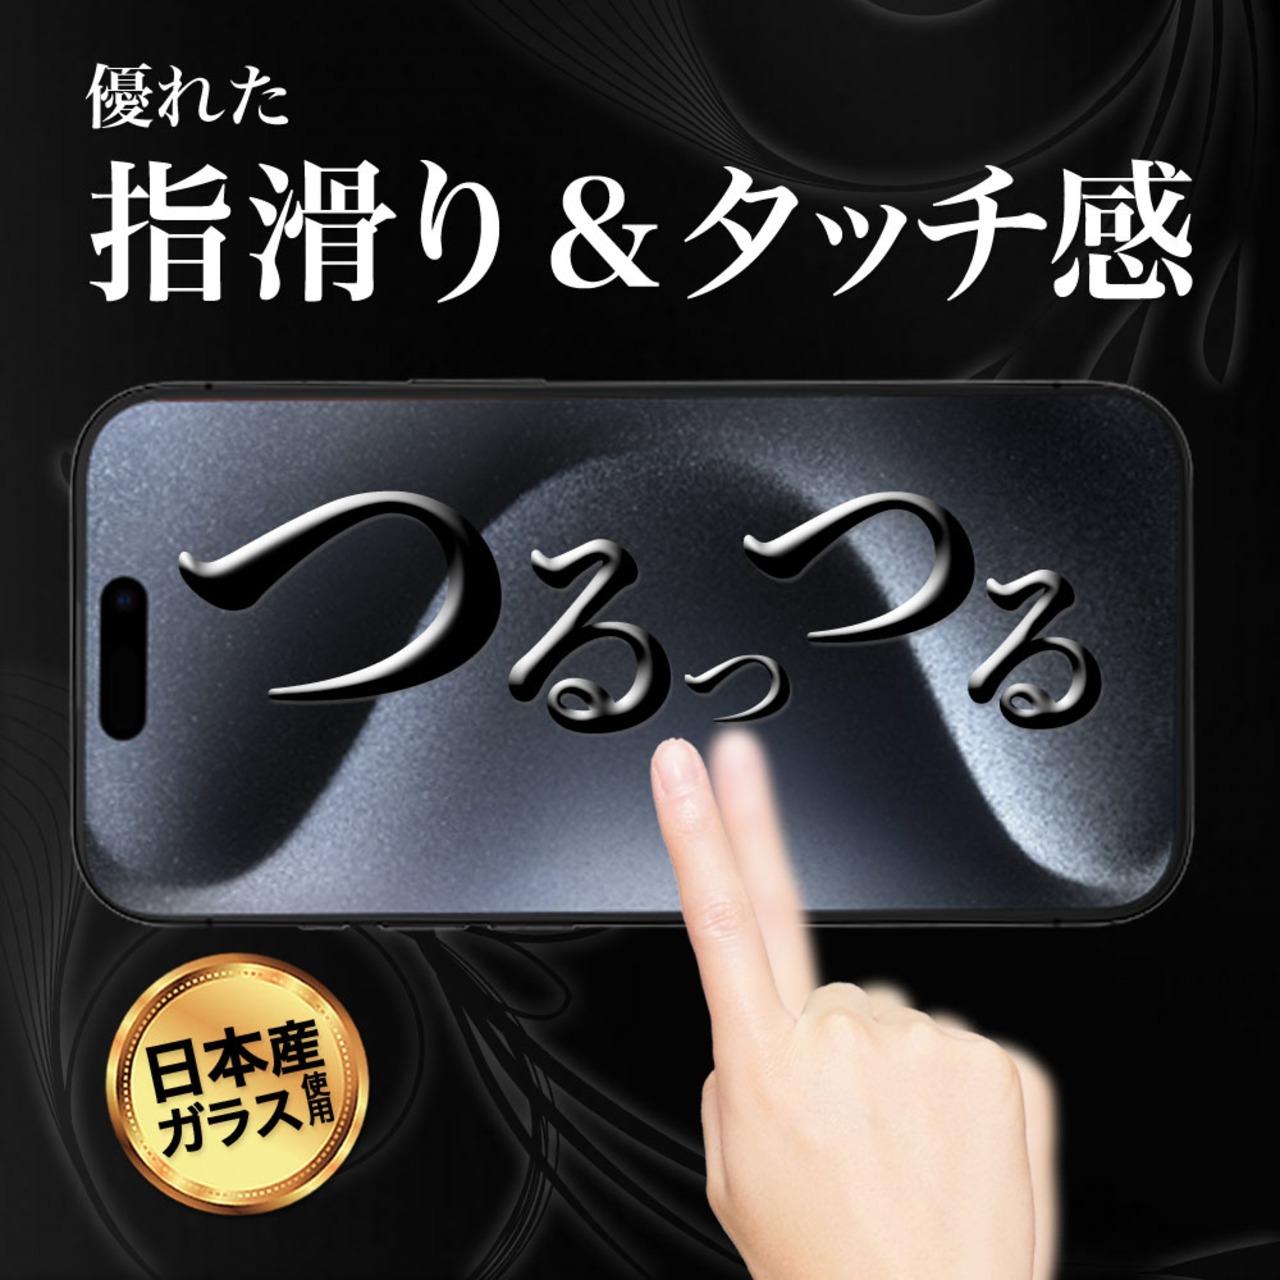 Hy+ iPhone15 Pro Max フィルム ガラスフィルム W硬化製法 一般ガラスの3倍強度 全面保護 全面吸着 日本産ガラス使用 厚み0.33mm ブラック